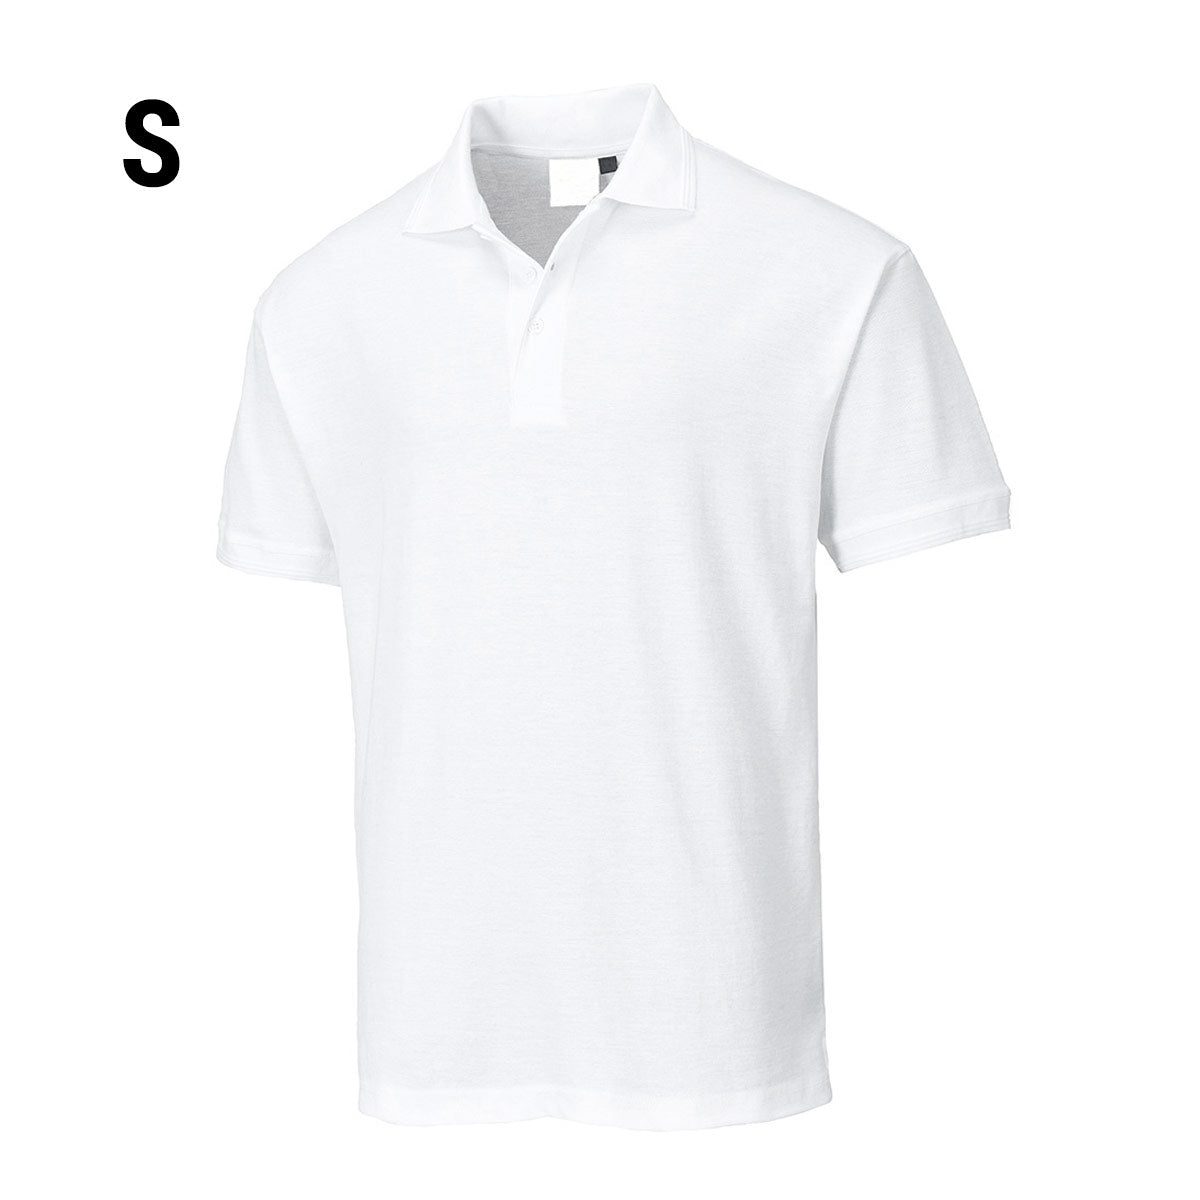 Poloshirt til mænd - Hvid - Størrelse: S